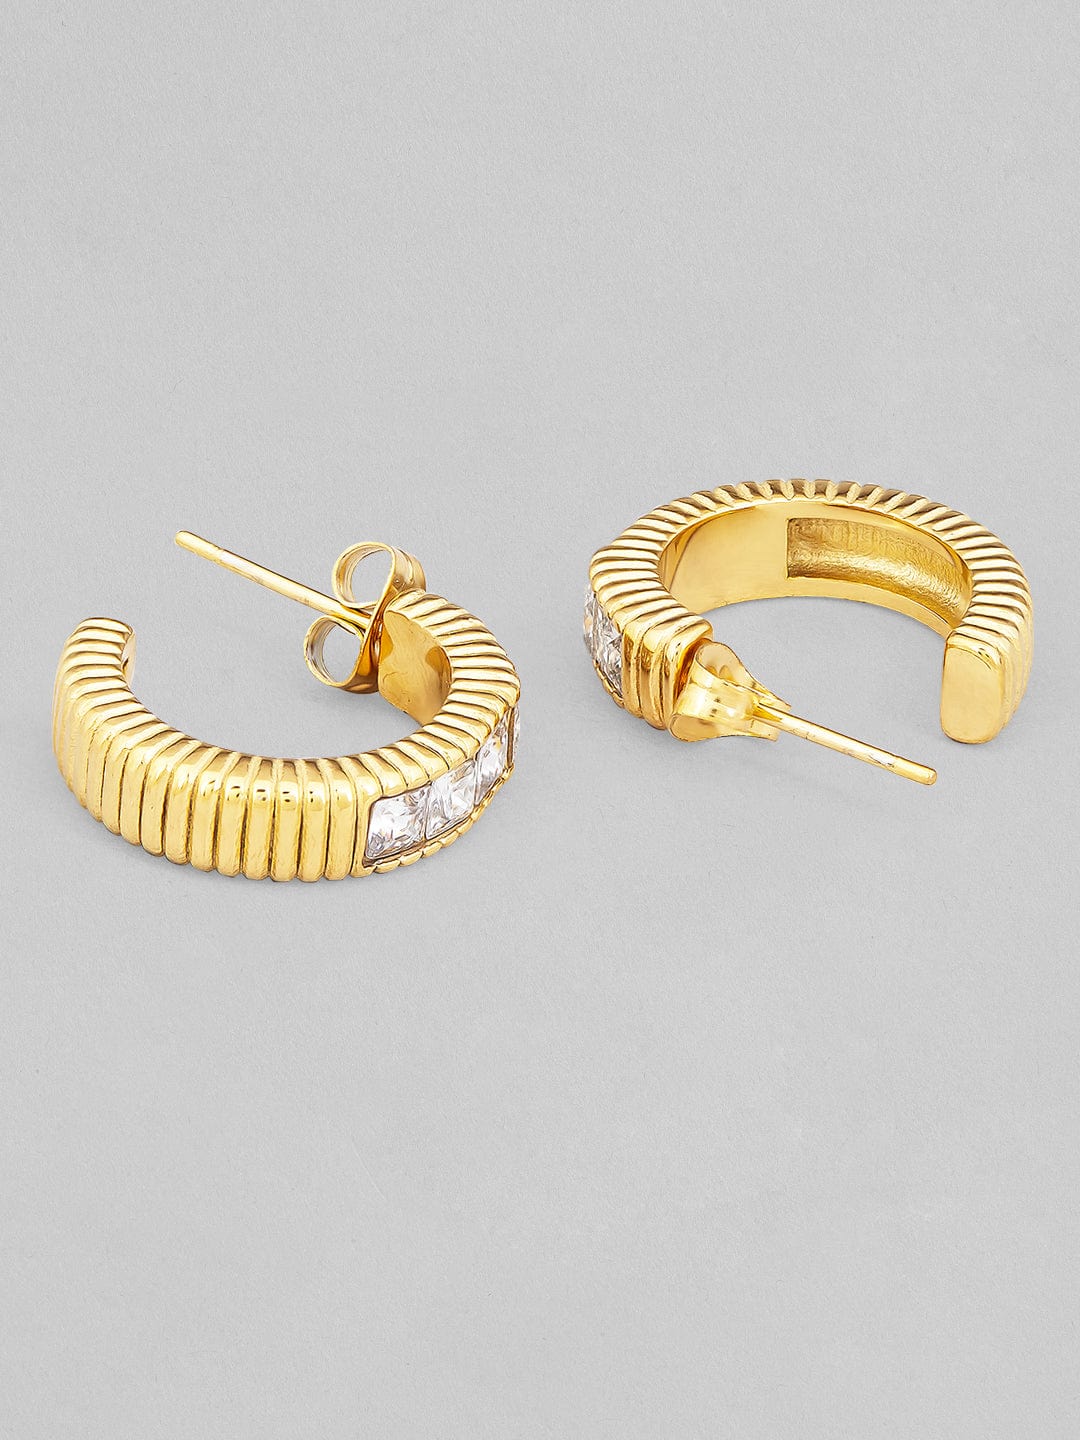 Rubans Voguish 18K Gold Plated Stainless Steel Waterproof Huggie Hoop Earring With Zircons. Earrings